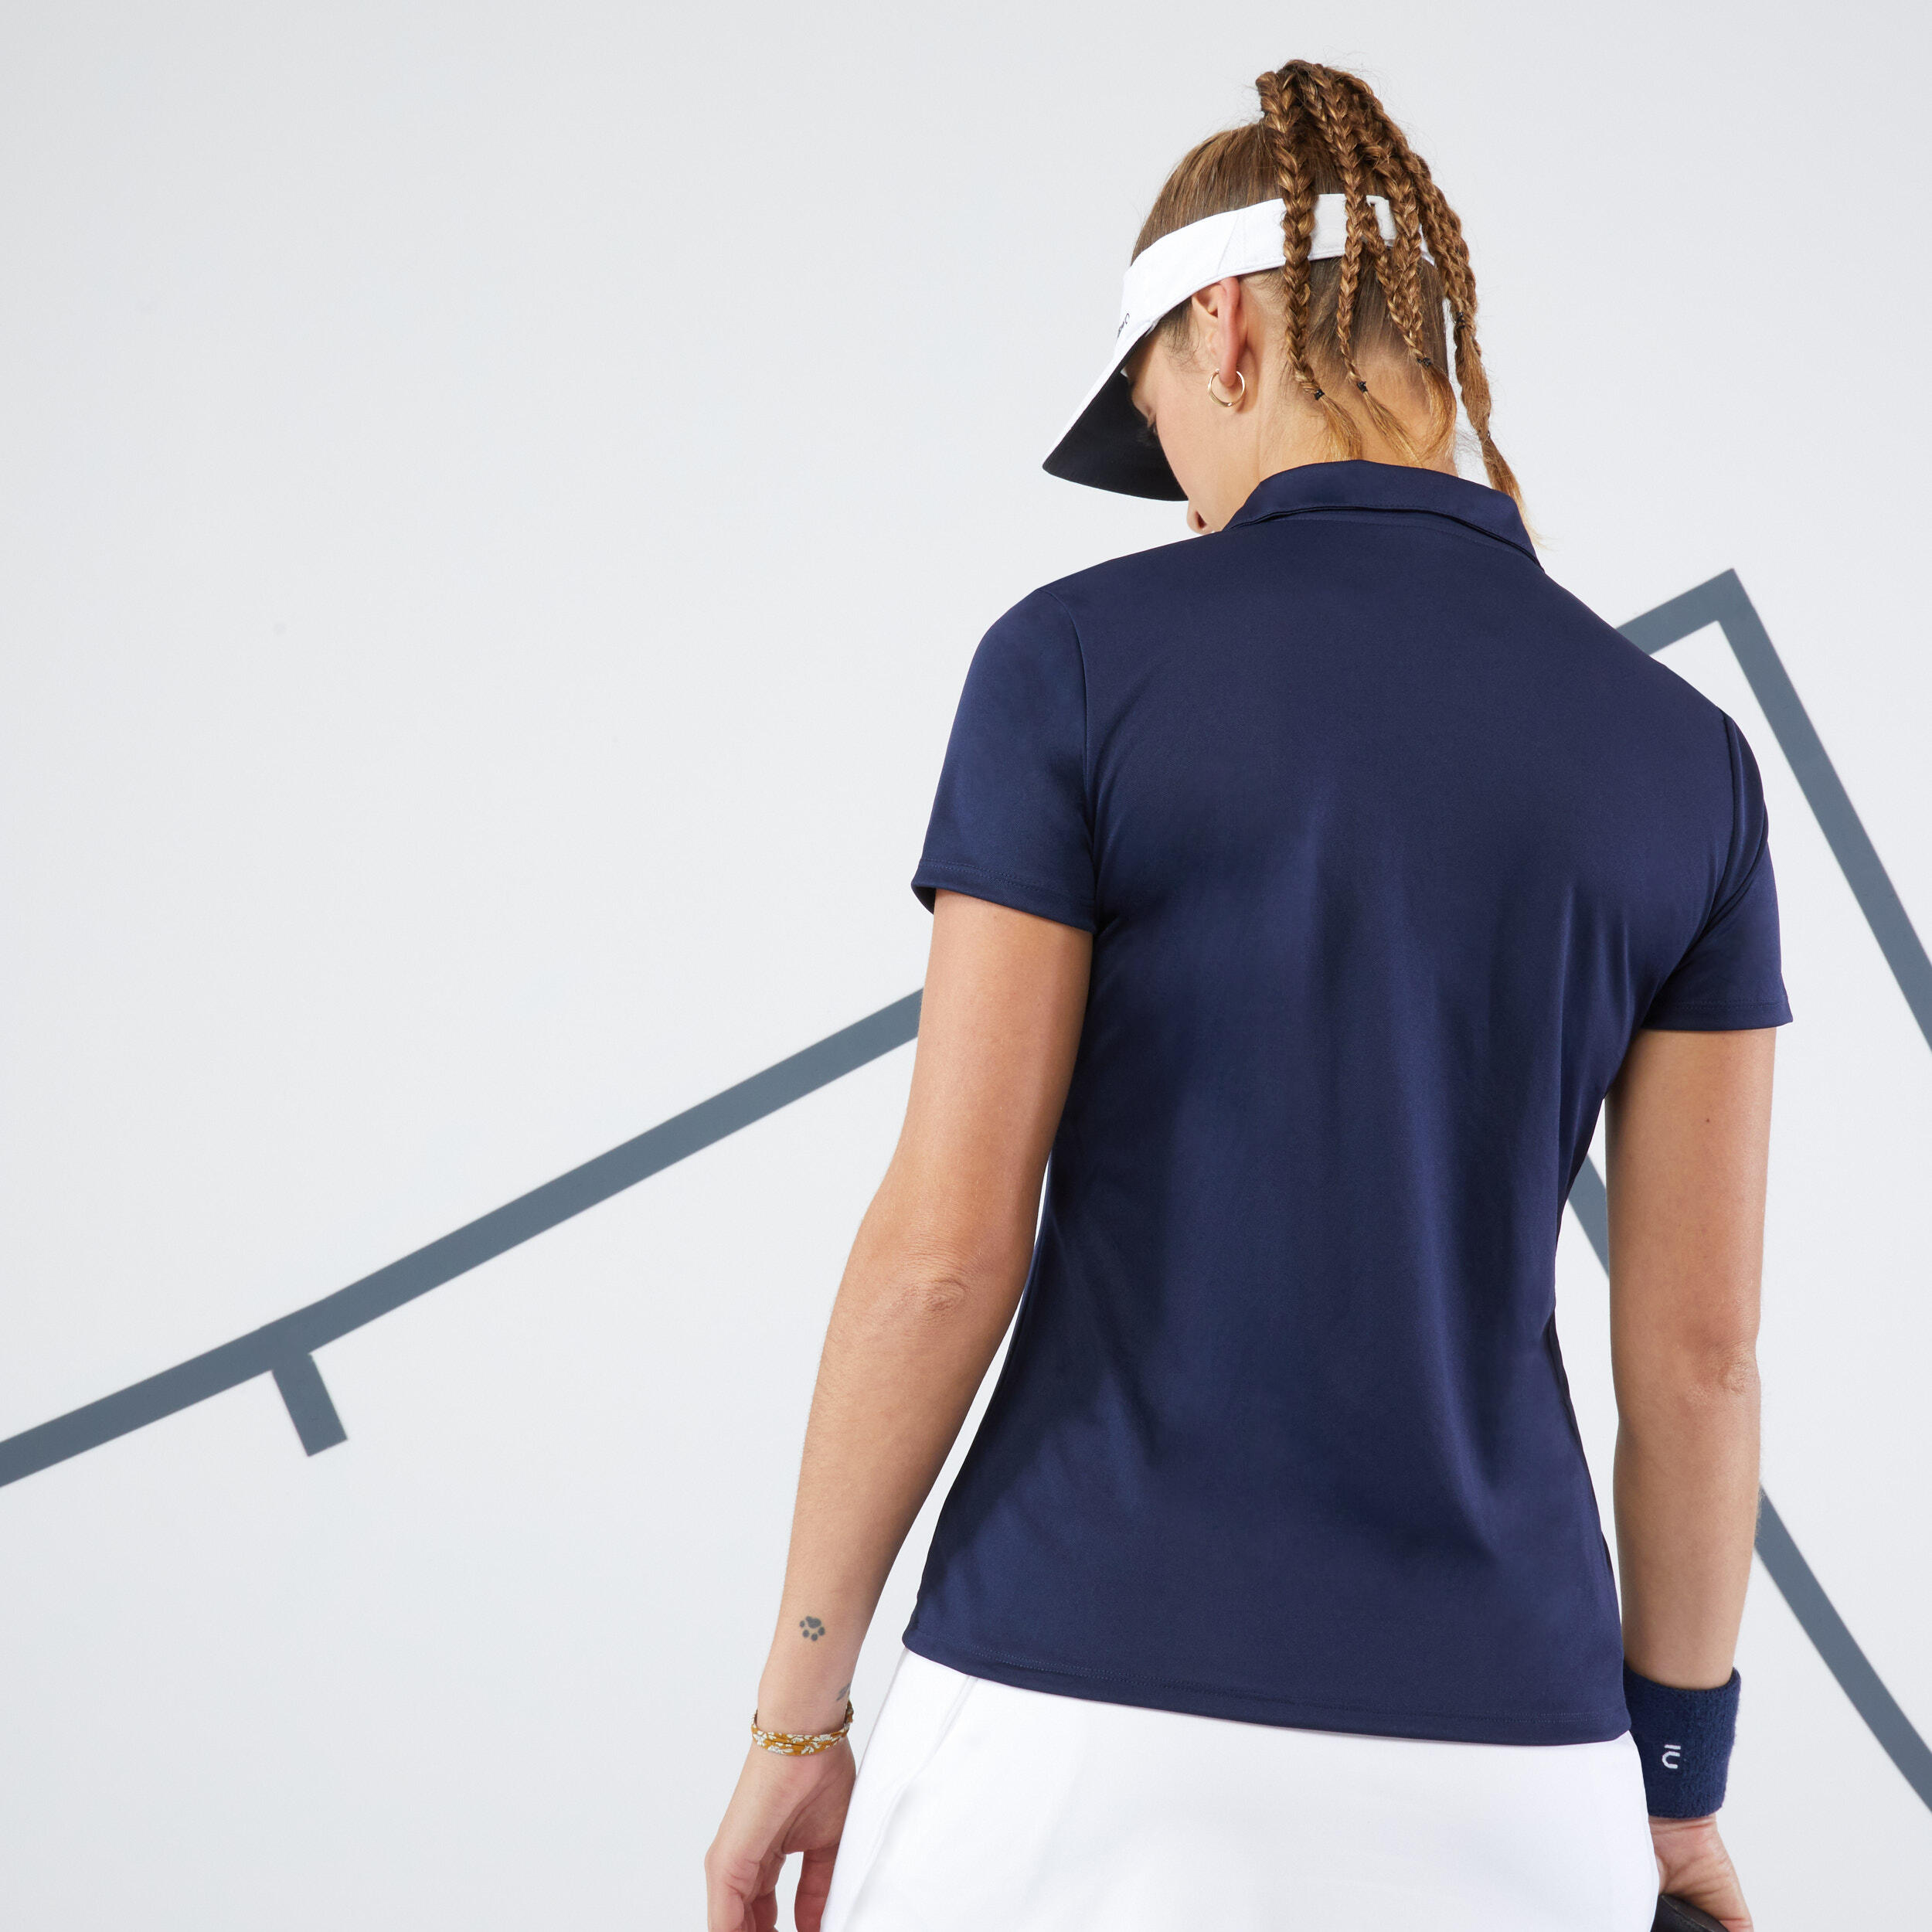 Essential 100 Tennis Quick-Dry Polo Shirt - Women - ARTENGO